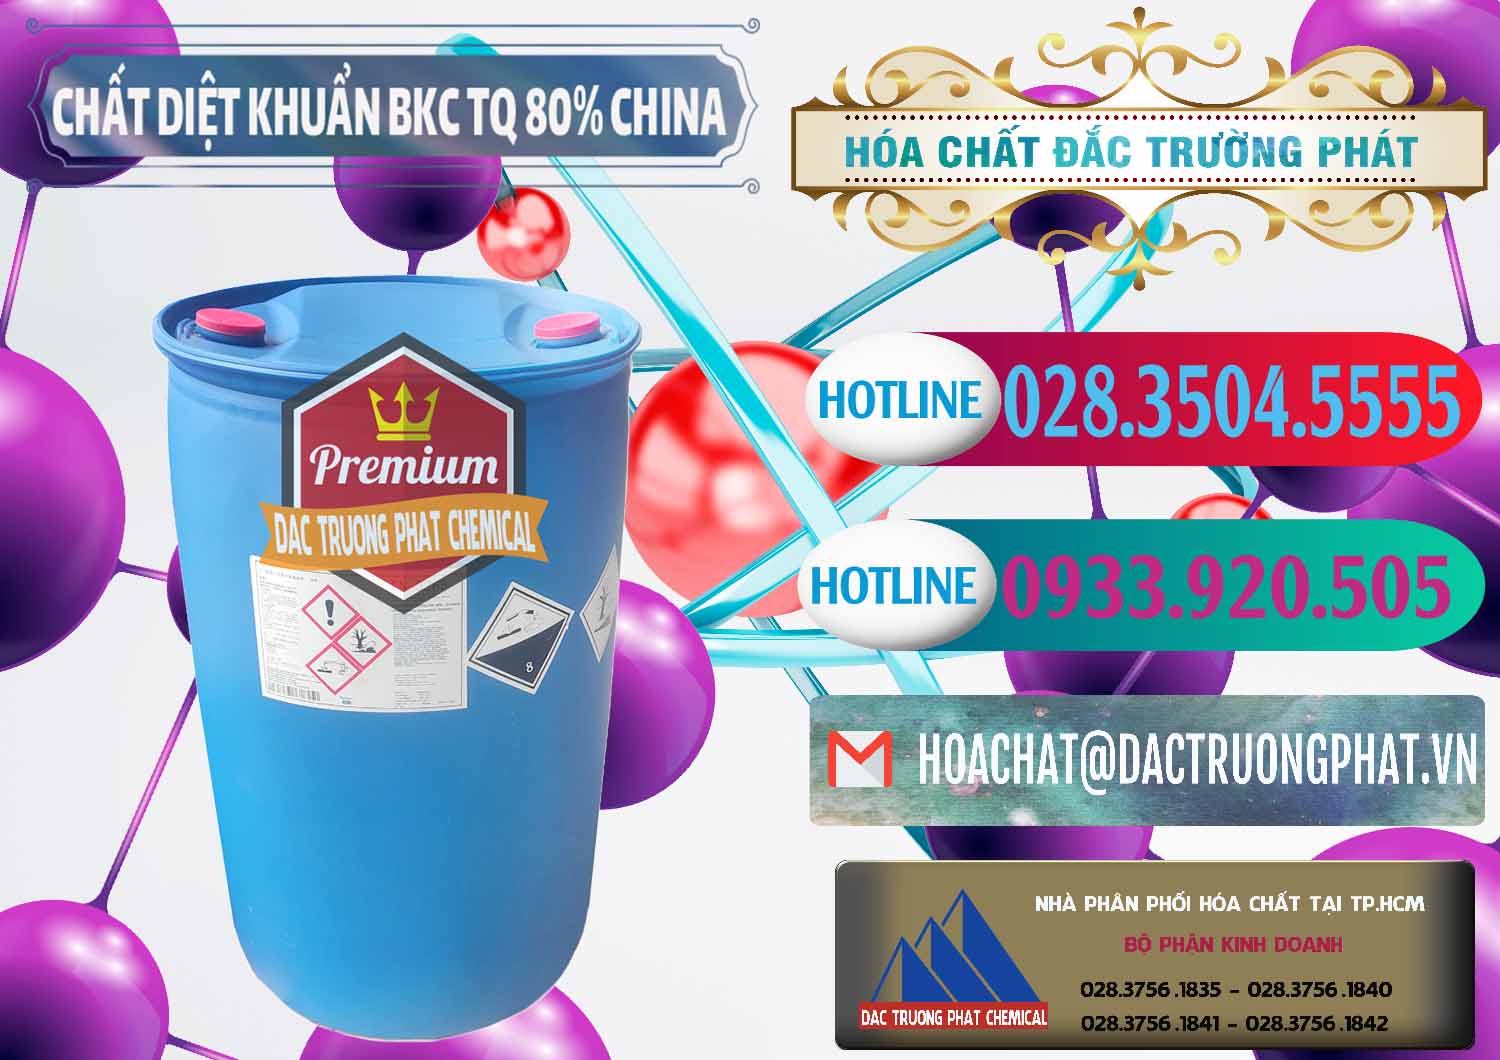 Cty chuyên bán - cung ứng BKC - Benzalkonium Chloride 80% Trung Quốc China - 0310 - Cty chuyên kinh doanh _ phân phối hóa chất tại TP.HCM - truongphat.vn